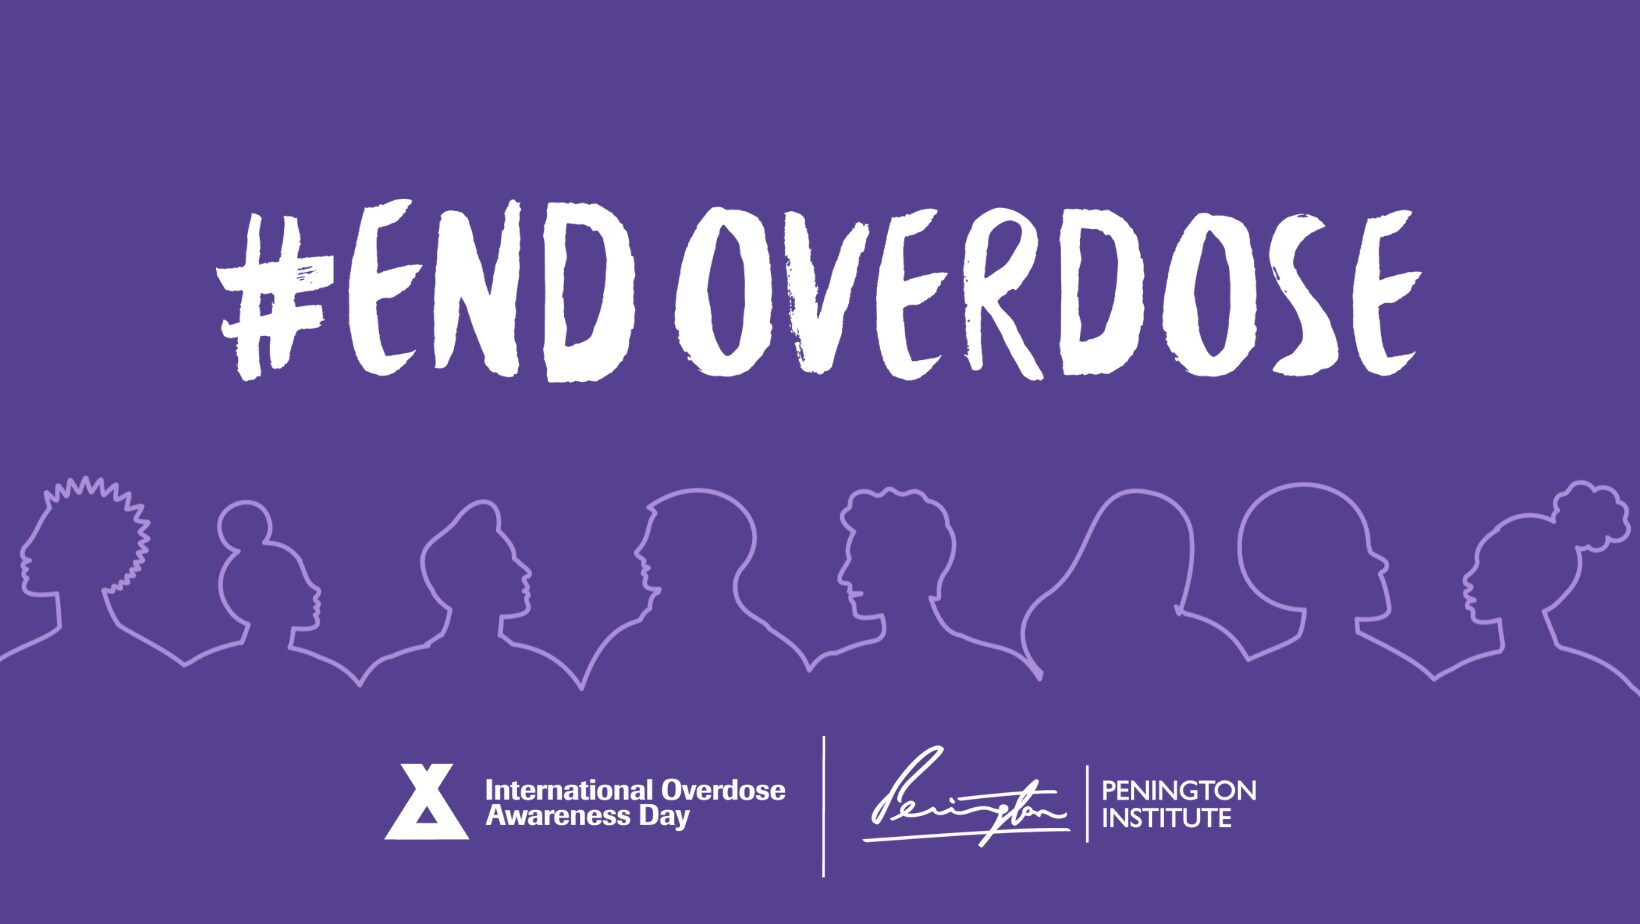 Banner for #EndOverdose. International Overdose Awareness Day